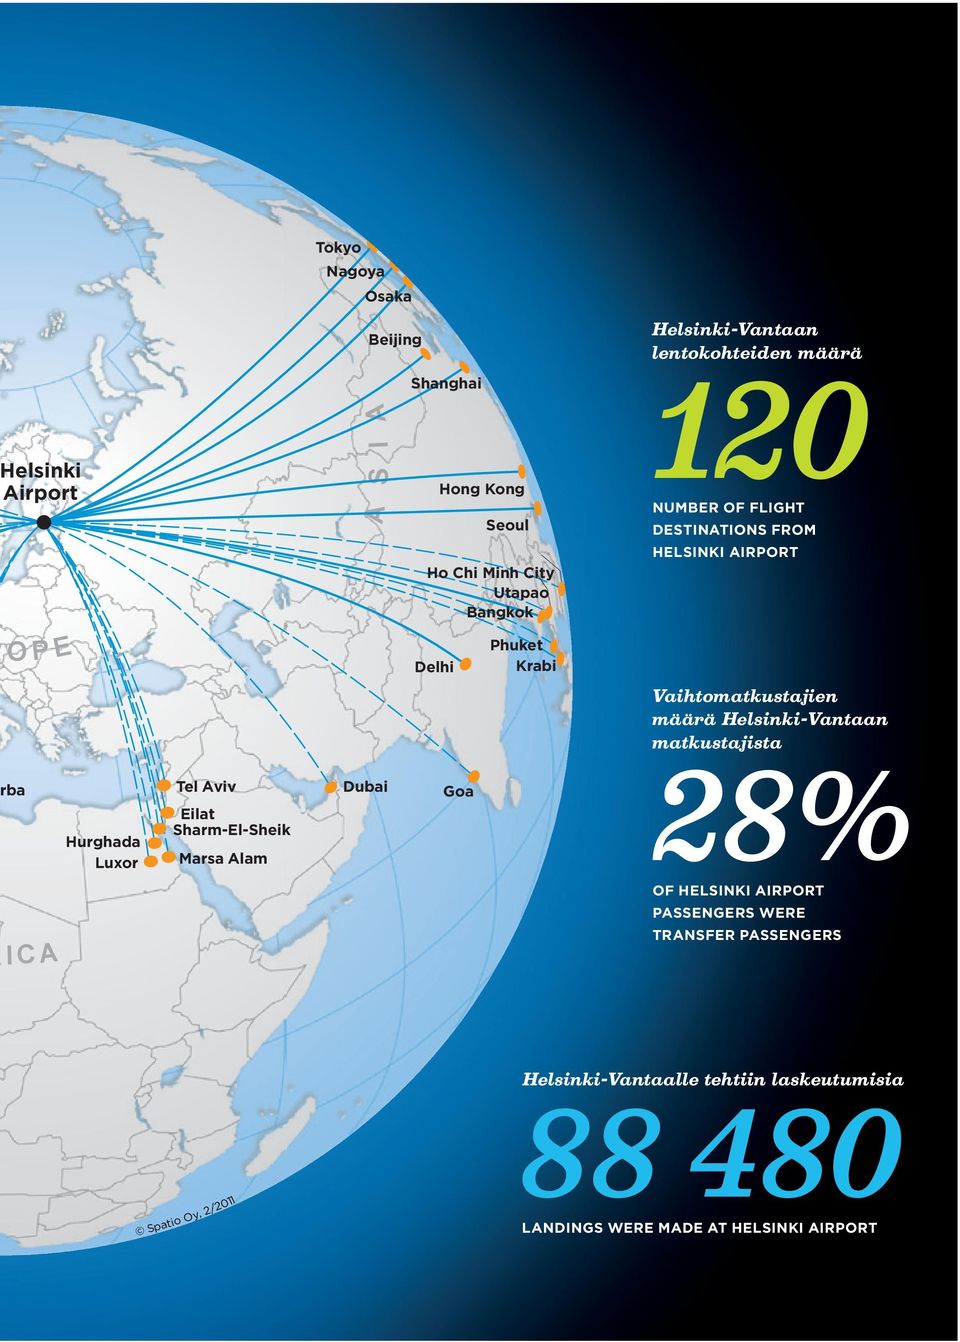 Aviv Eilat Sharm-El-Sheik Marsa Alam Dubai Goa Vaihtomatkustajien määrä Helsinki-Vantaan matkustajista 28% OF HELSINKI AIRPORT